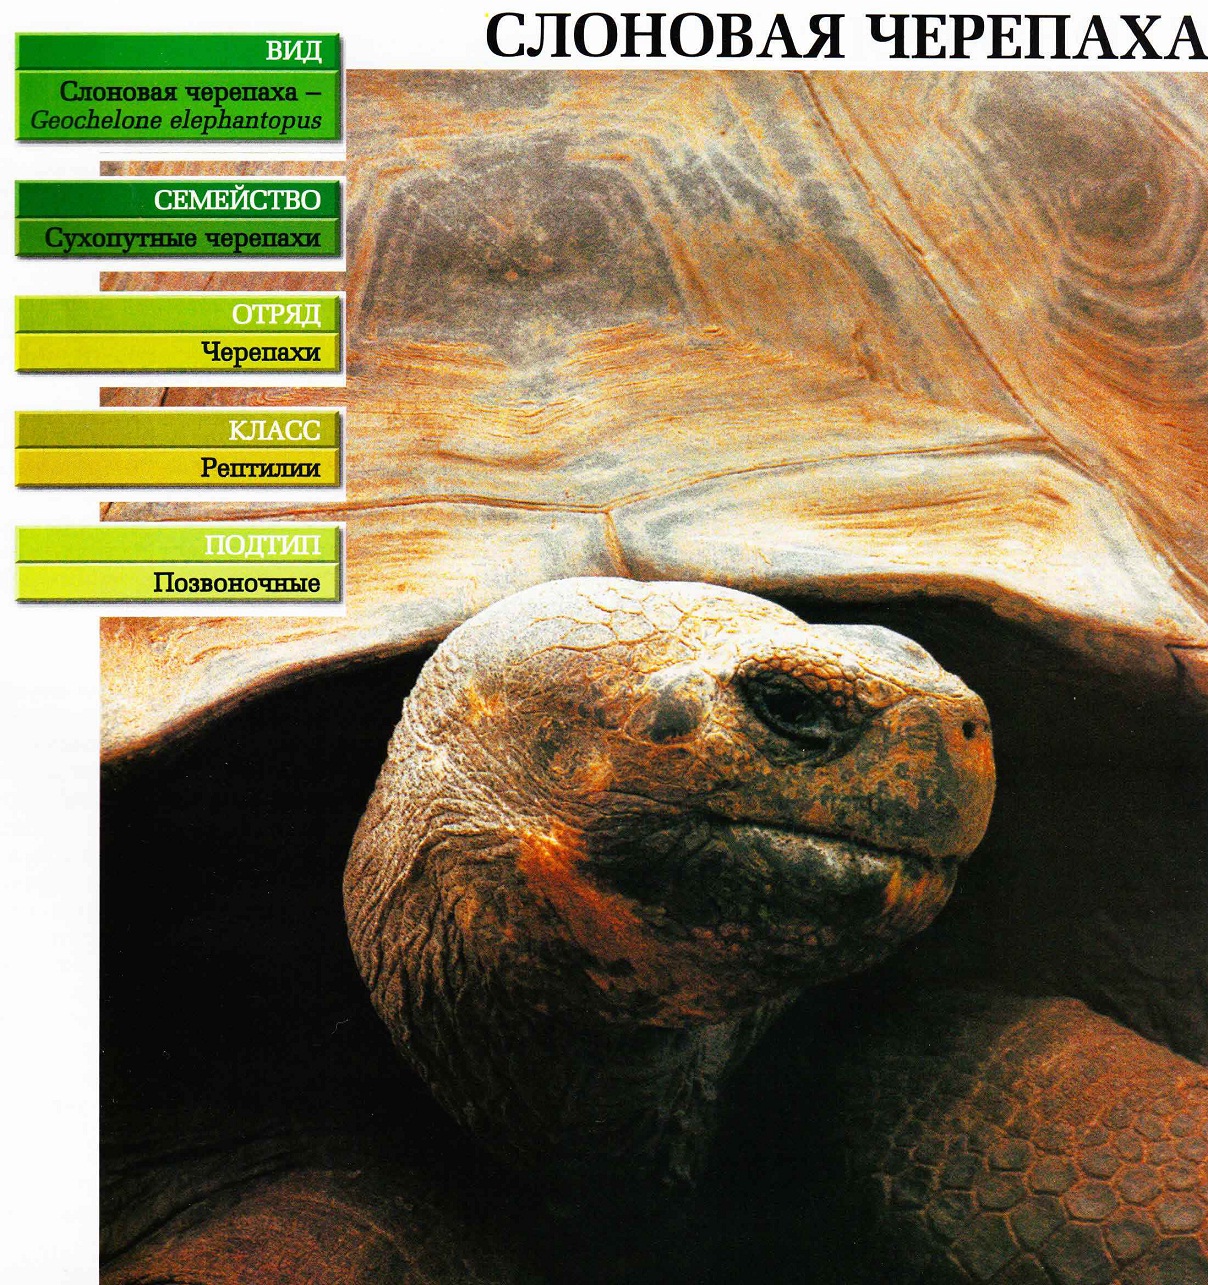 Систематика (научная классификация) черепахи слоновой. Geochelone elephantopus.